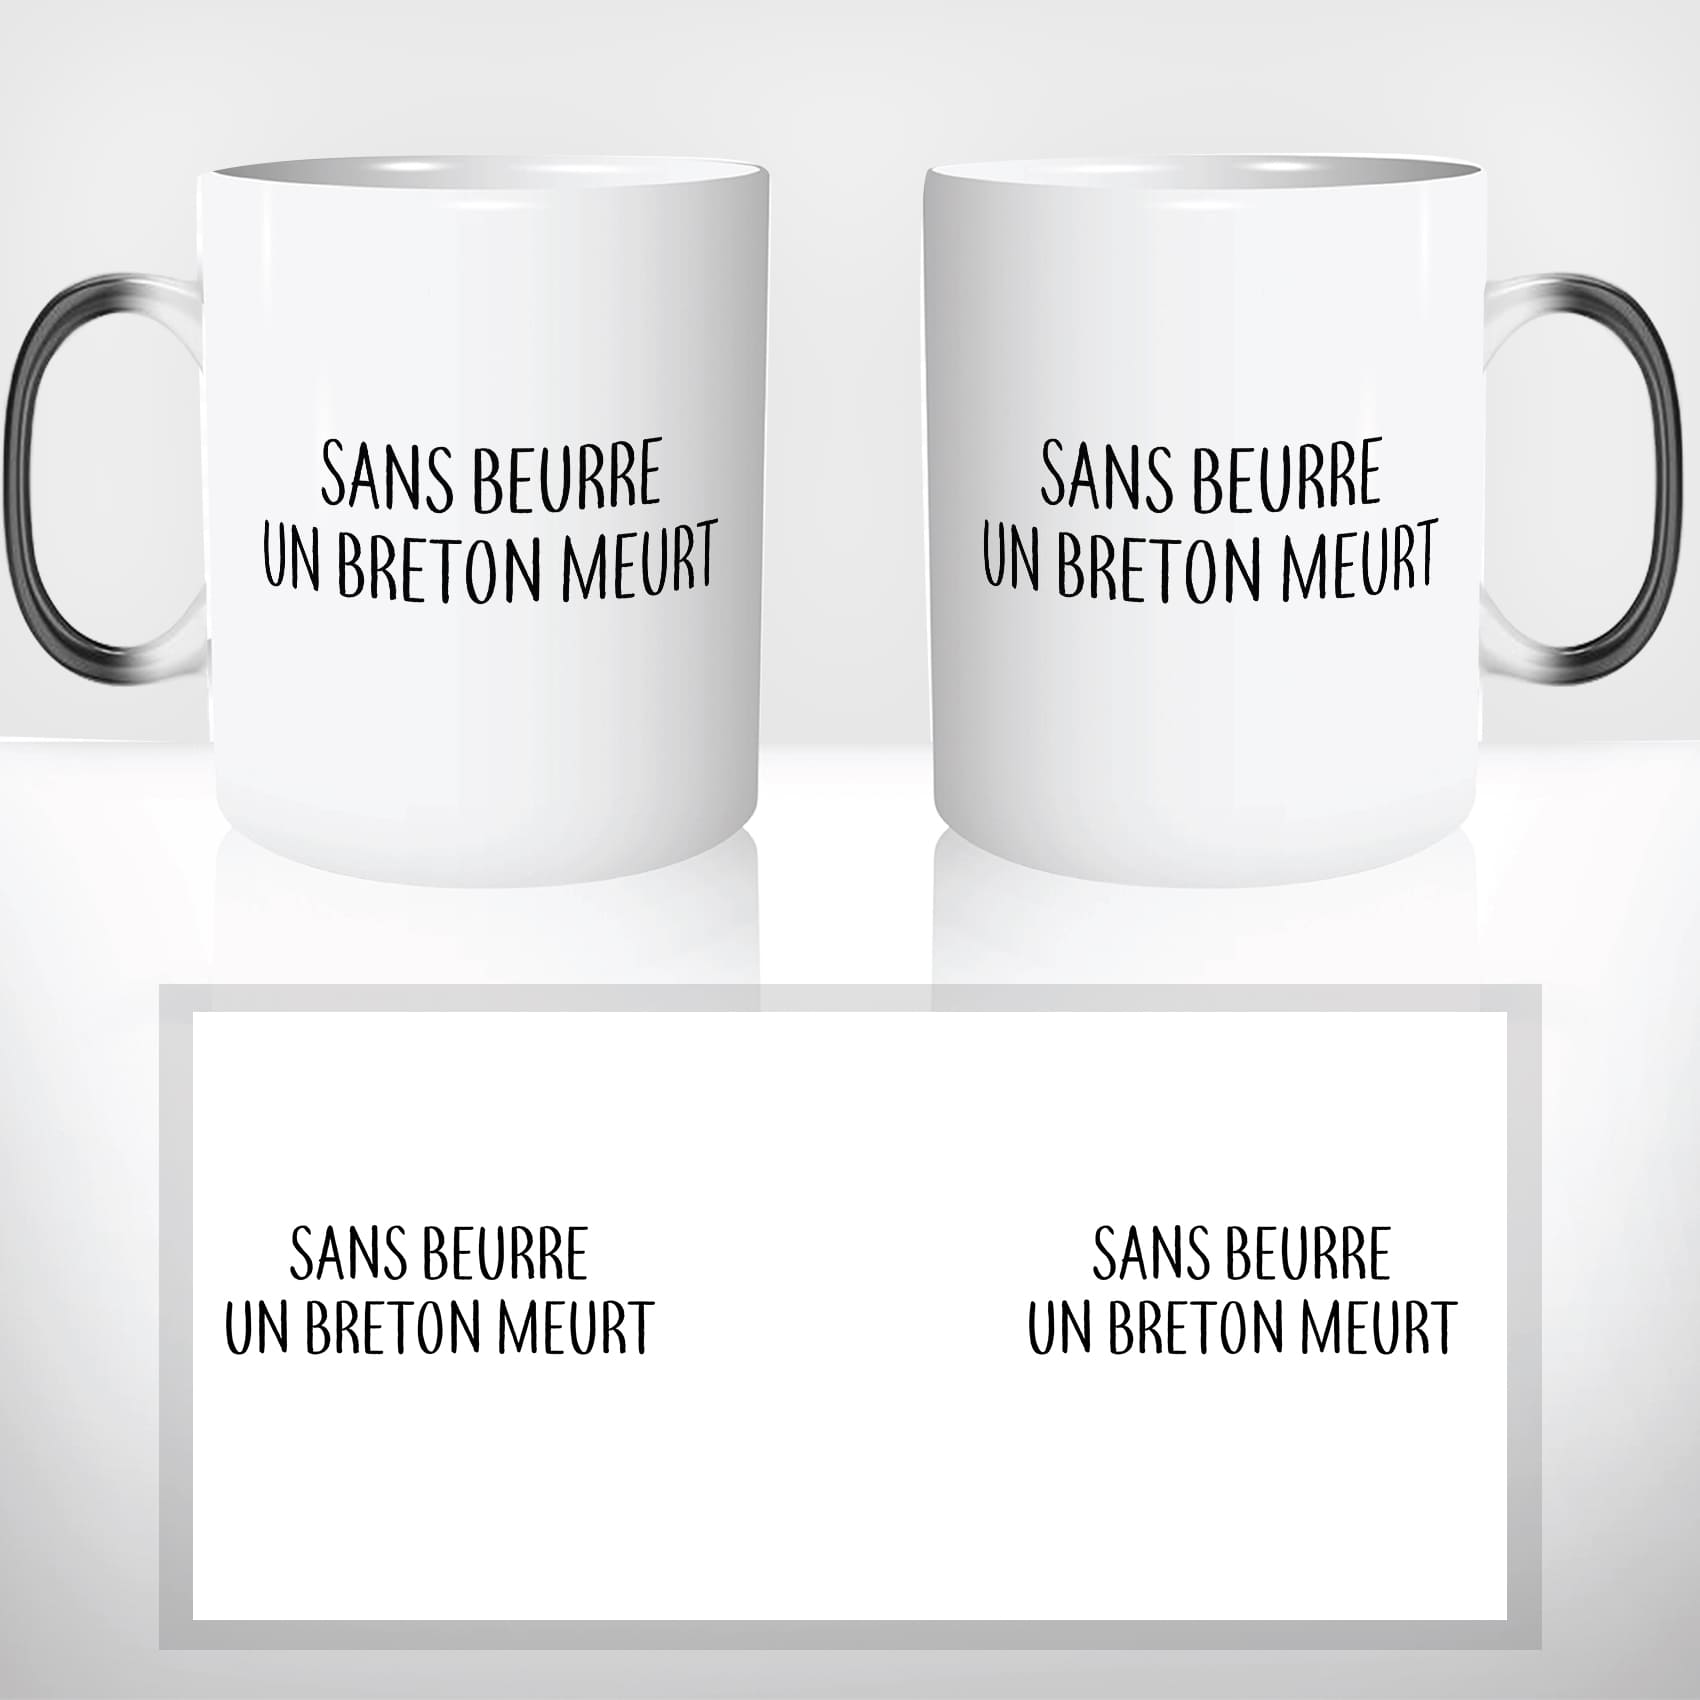 mug-magique-tasse-magic-thermo-reactif-chauffant-sans-beurre-salé-un-breton-meurt-citataion-bretonne-france-personnalisé-cadeau-original-2